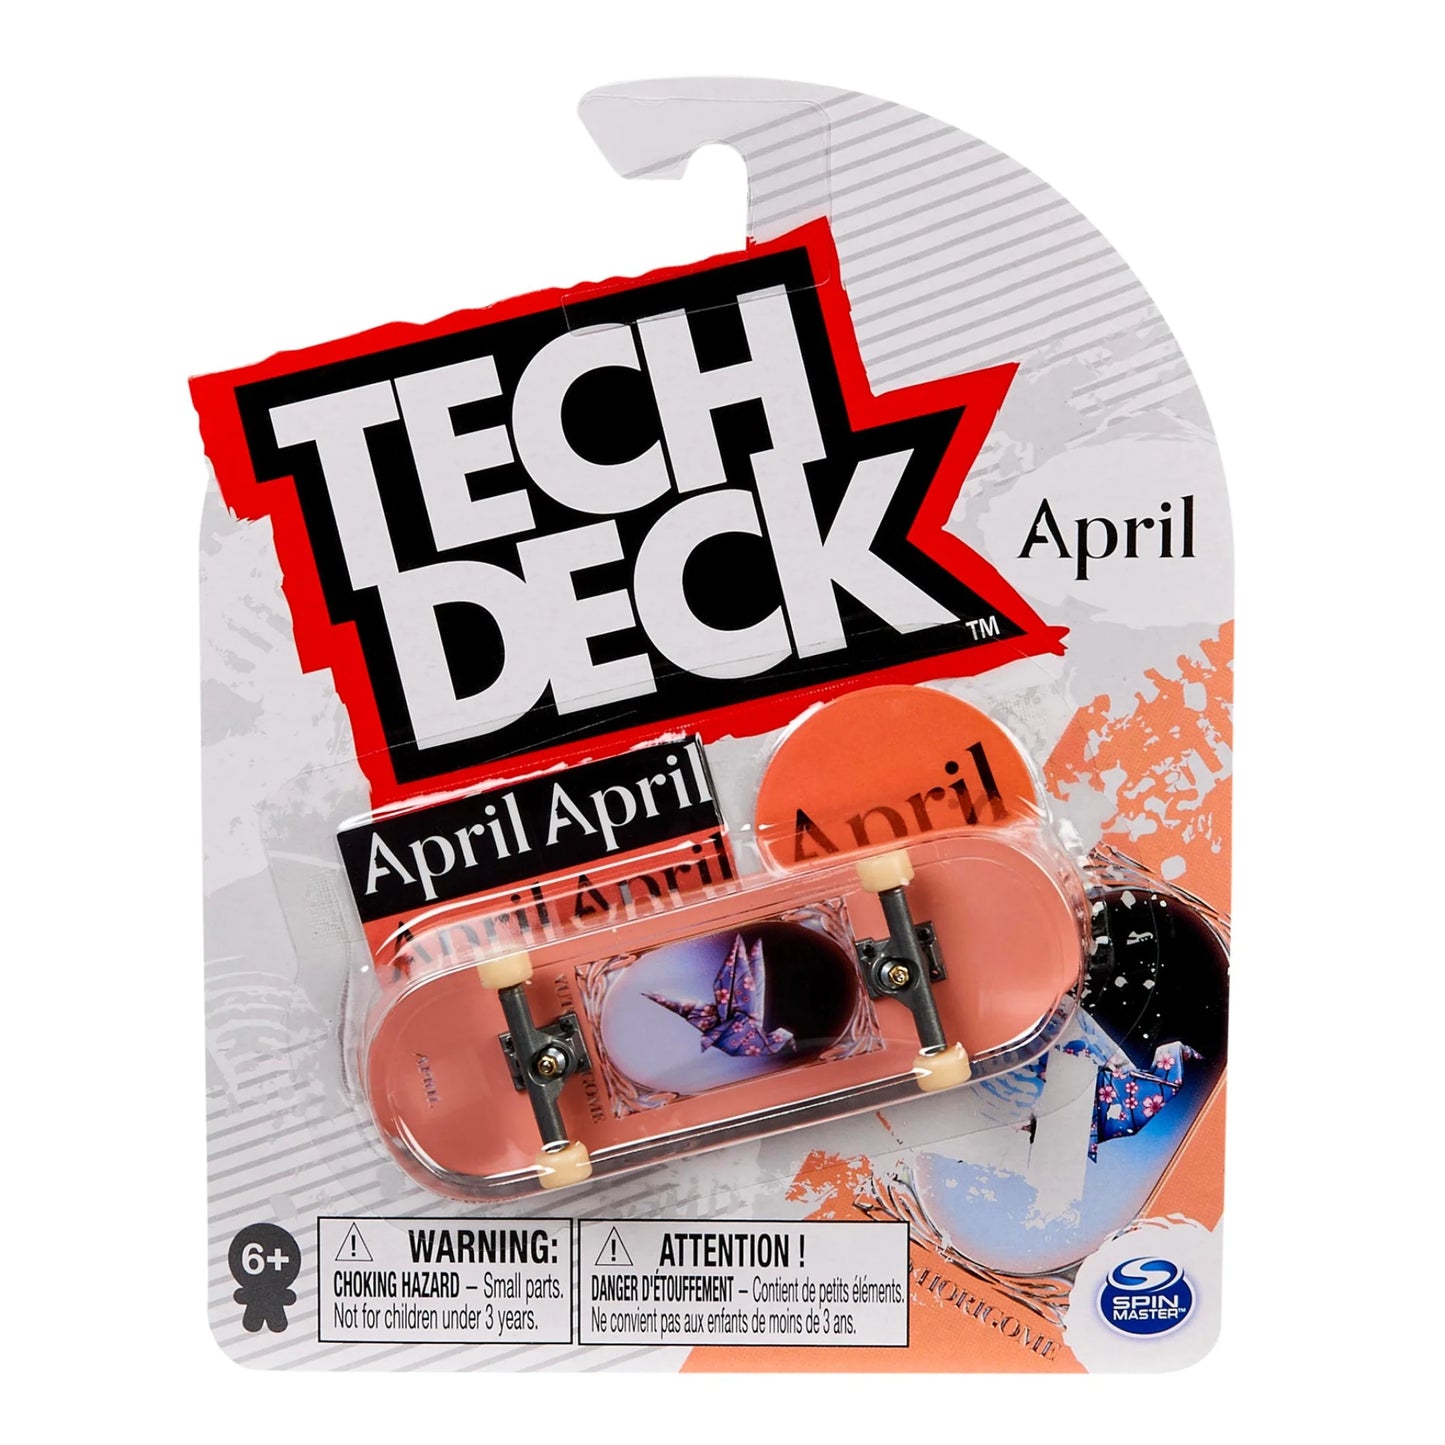 April - Yuto Horigome Tech Deck Fingerboard (M46) - 96mm - Prime Delux Store